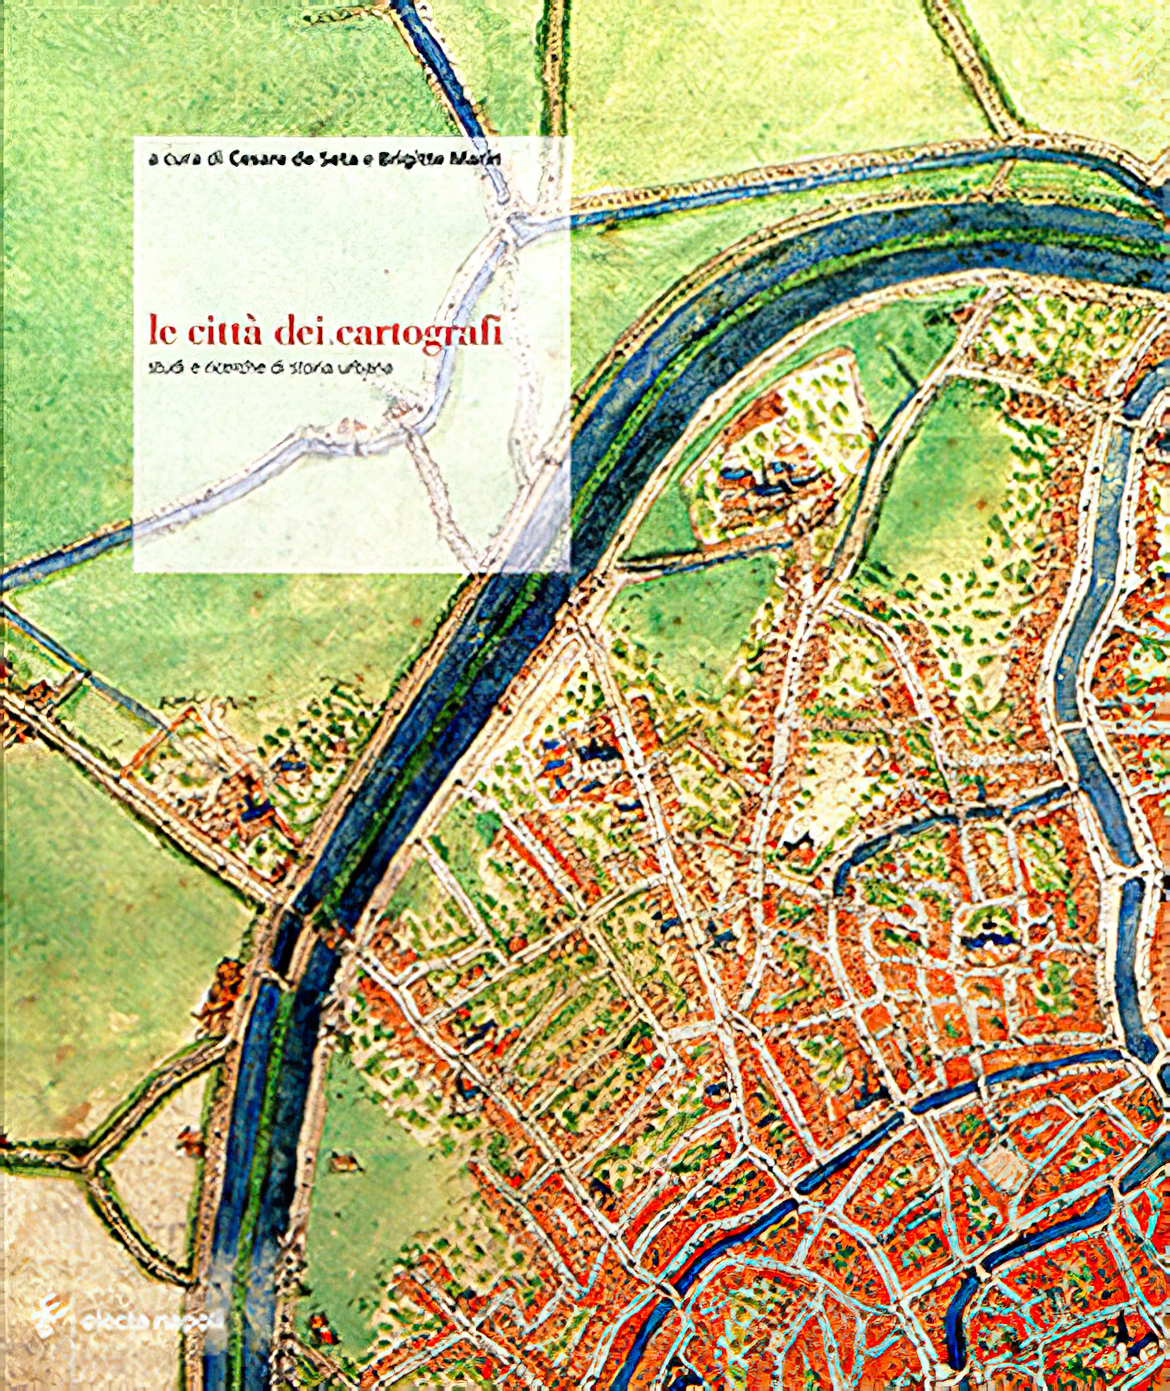 Le città dei cartografi (2008)